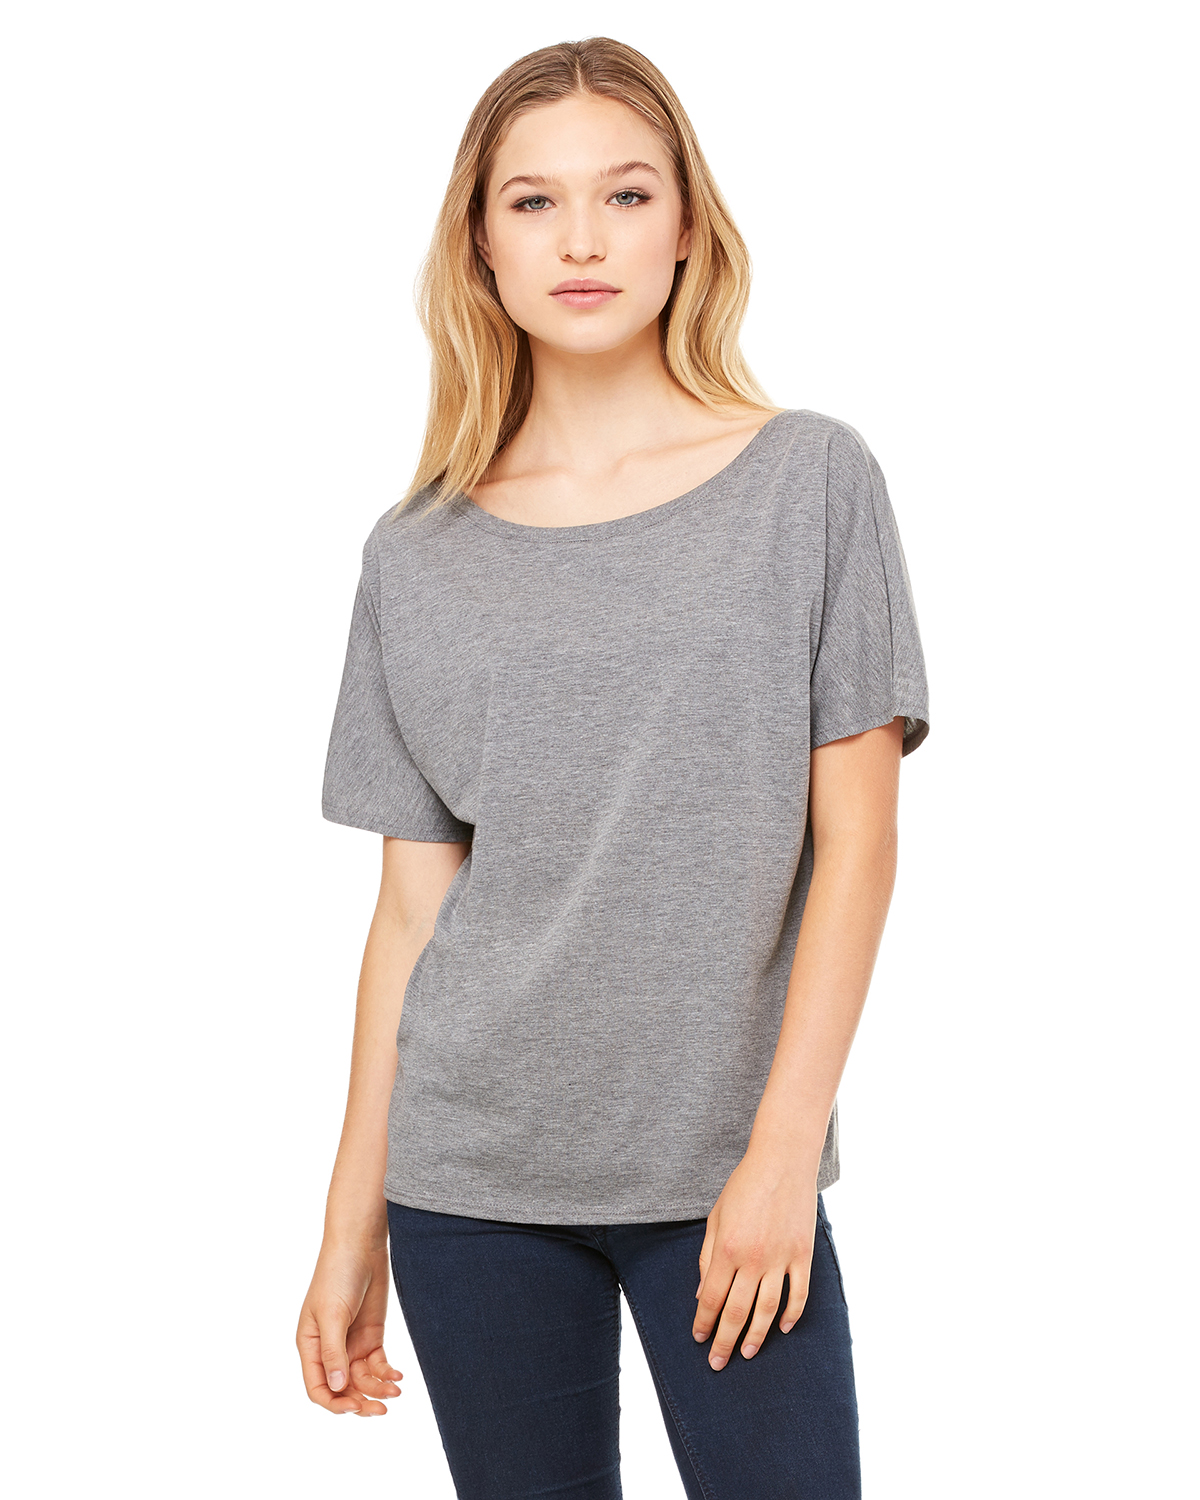 Bella 8816 - Ladies' Flowy Simple Tee $8.23 - T-Shirts